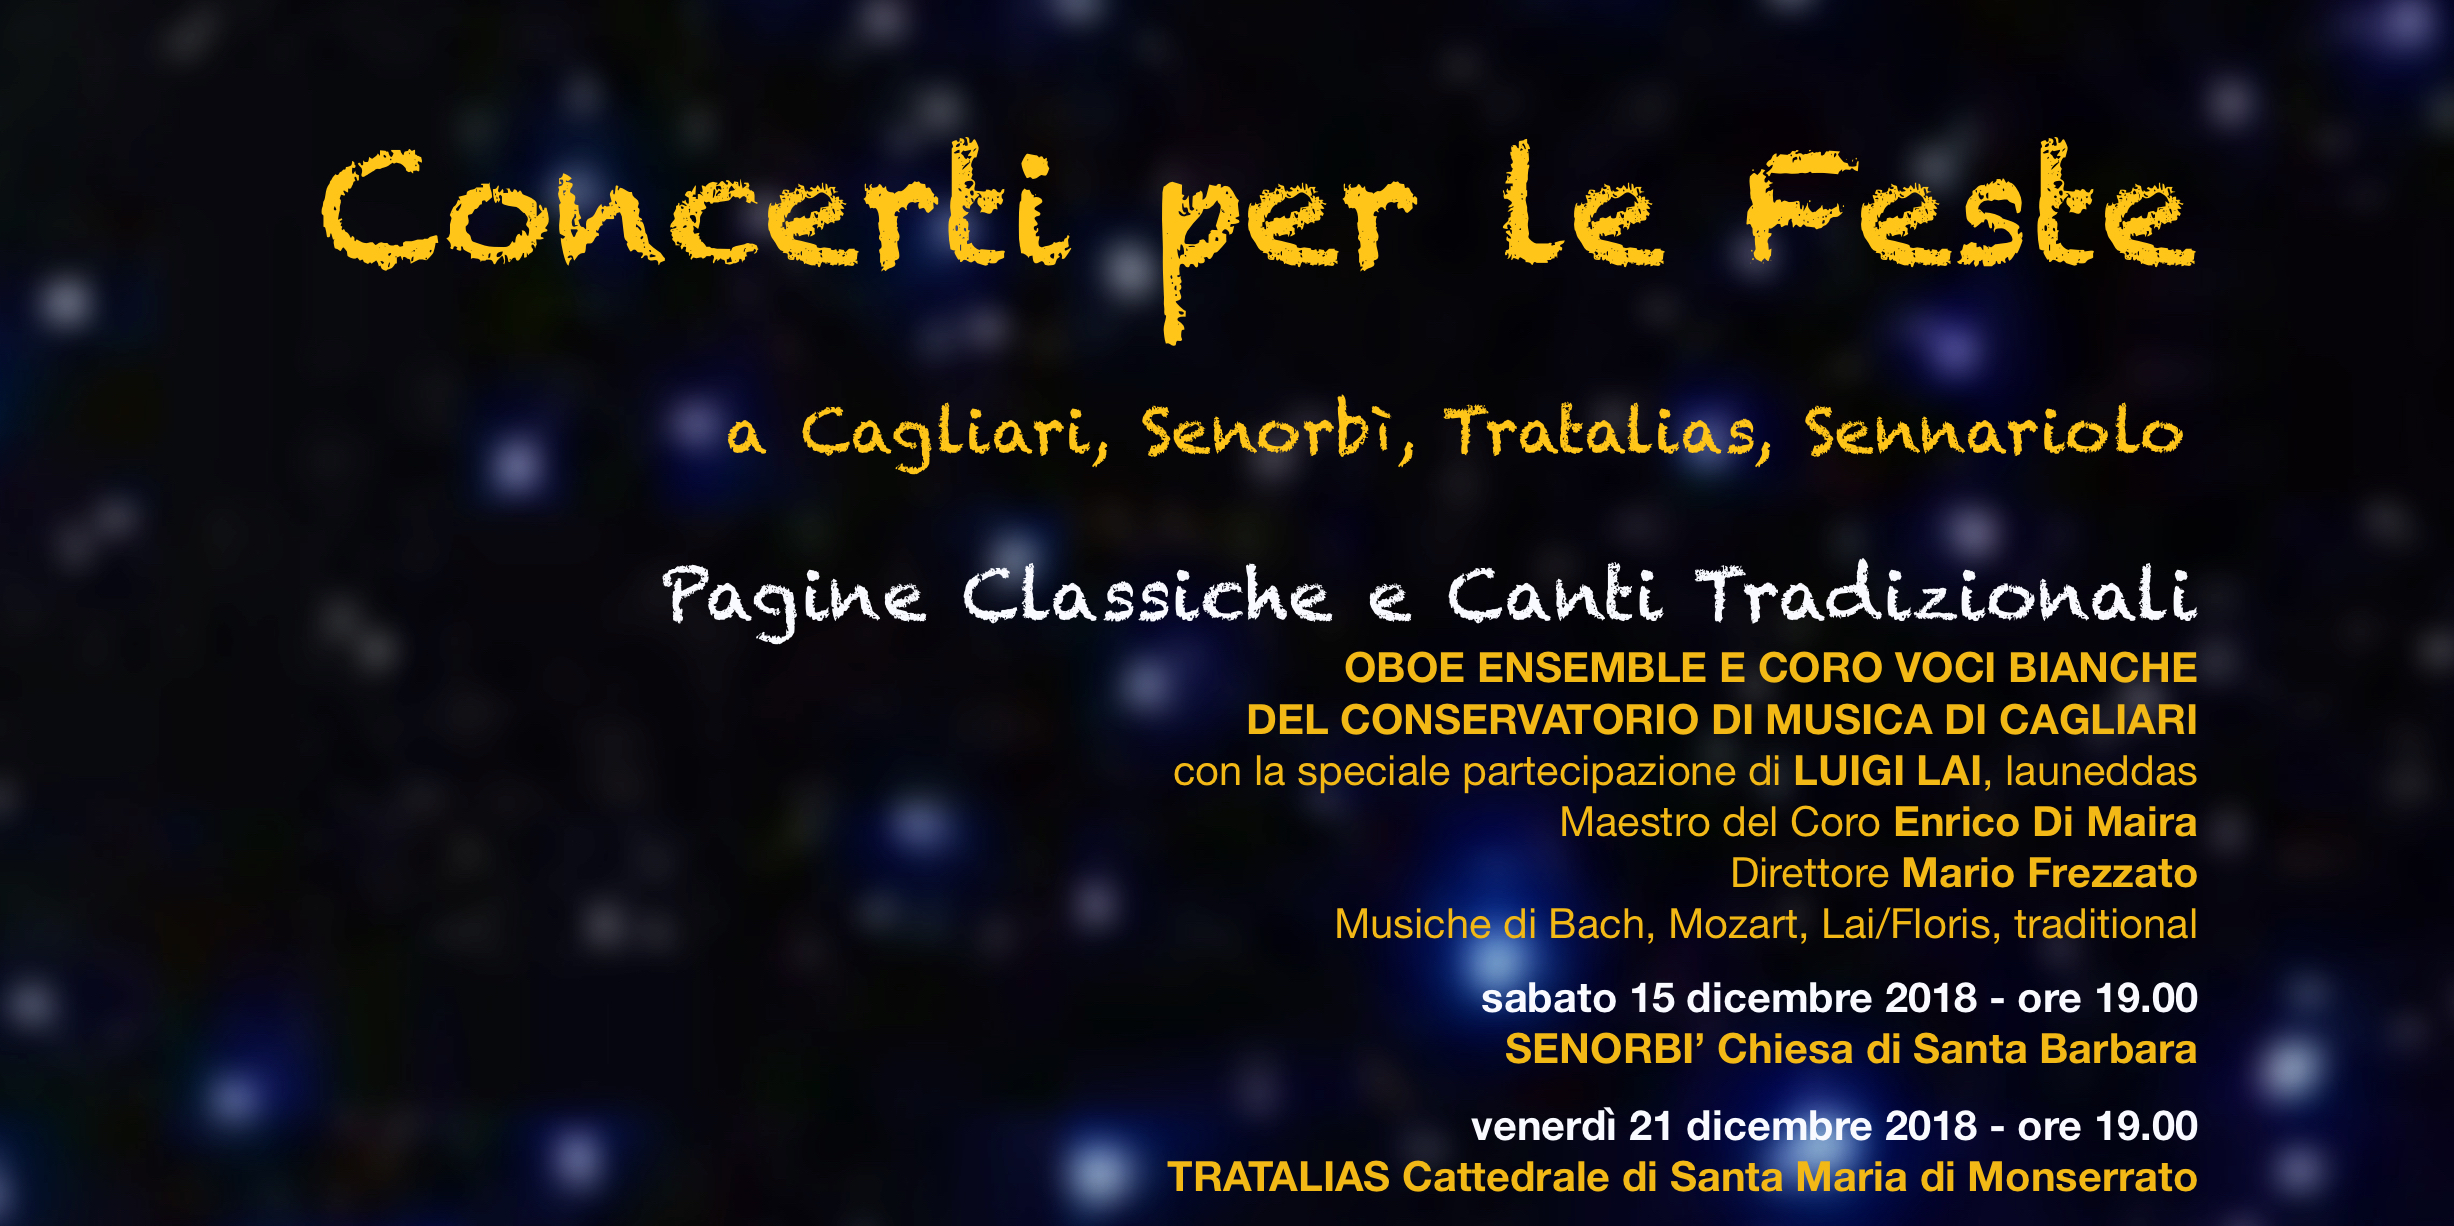 Sette appuntamenti per i “Concerti per le feste” del Conservatorio